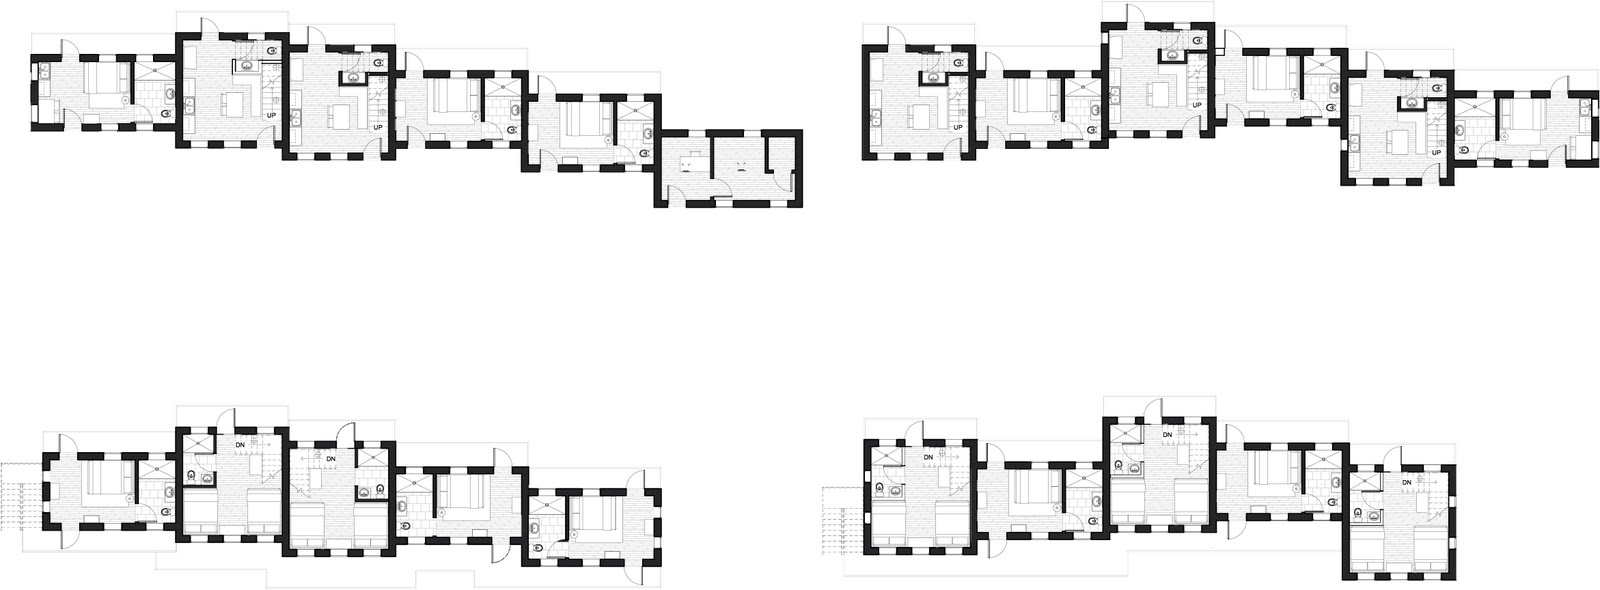 Hotel Suites. Floor Plan